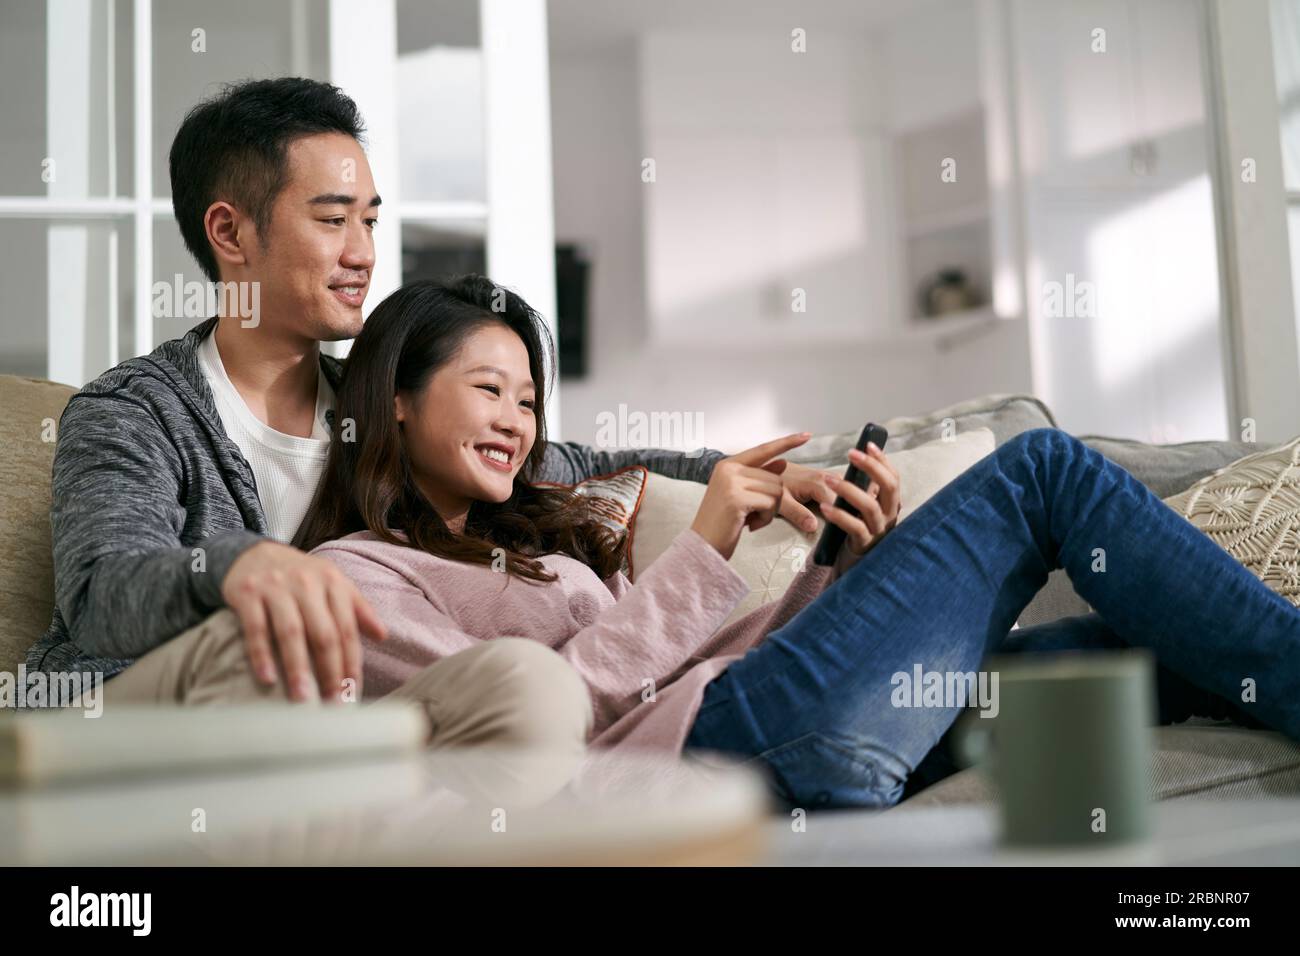 Glückliches junges asiatisches Paar, das zu Hause auf der Familientischcouch sitzt und sich Handyfotos ansieht Stockfoto